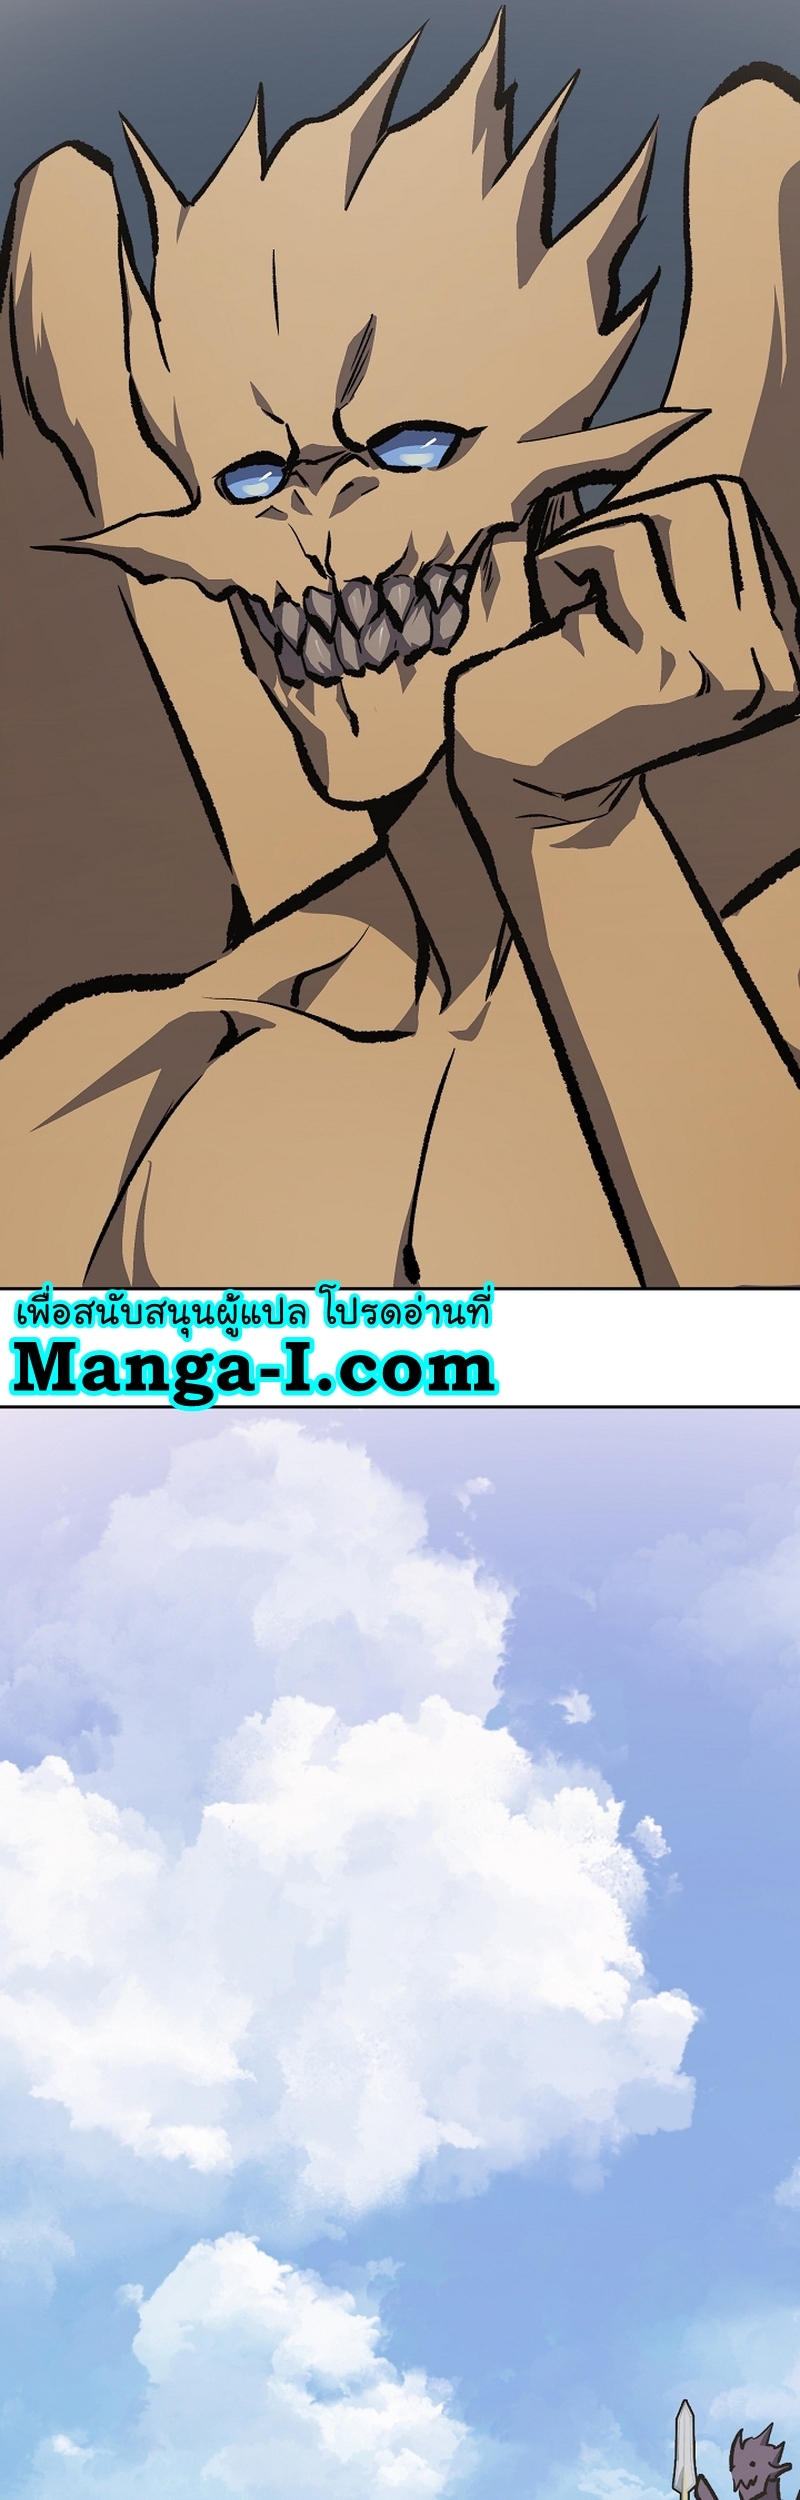 Manga Manhwa Level 1 Player 73 (53)